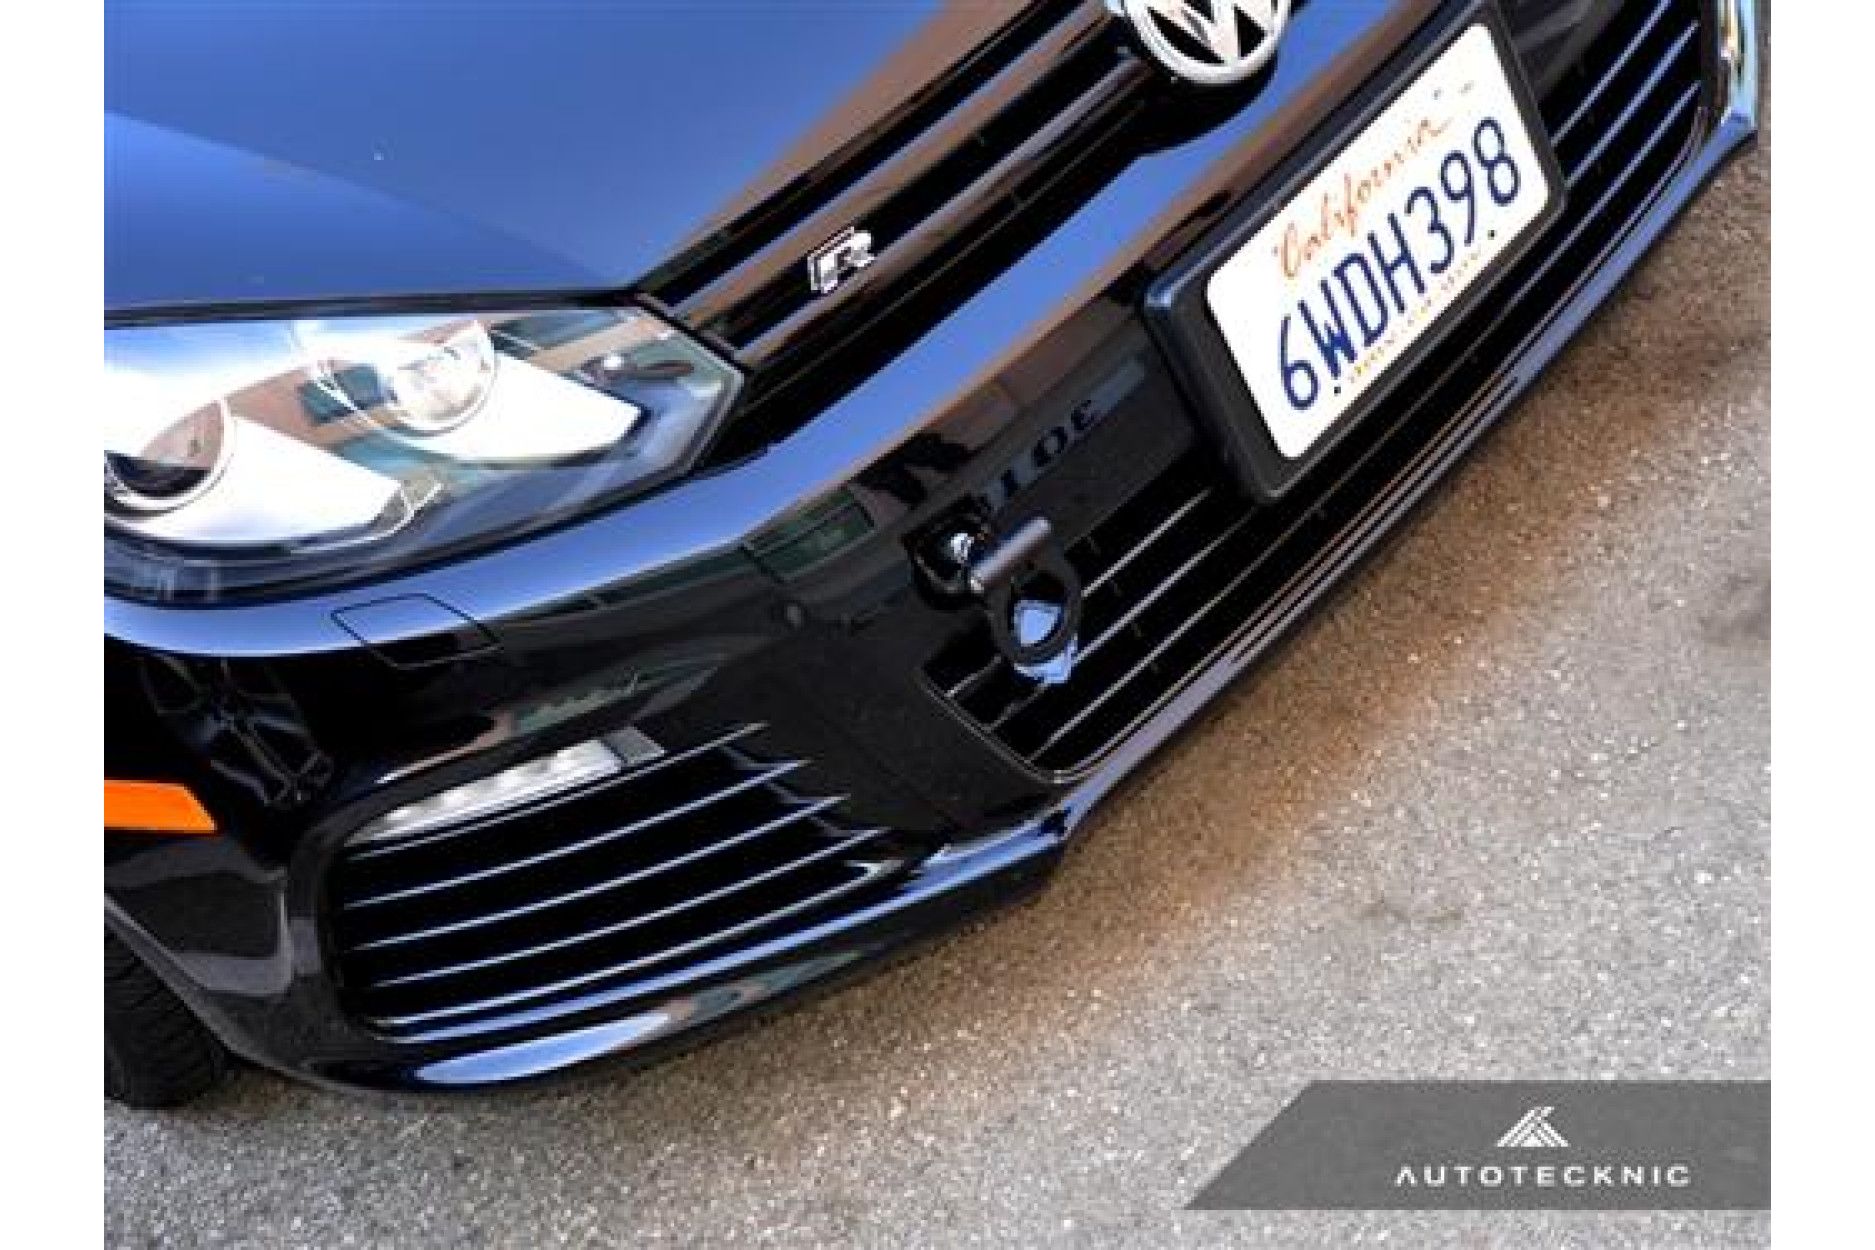 Autotecknic Aluminium Abschlepphaken für VW Golf MK5 - online